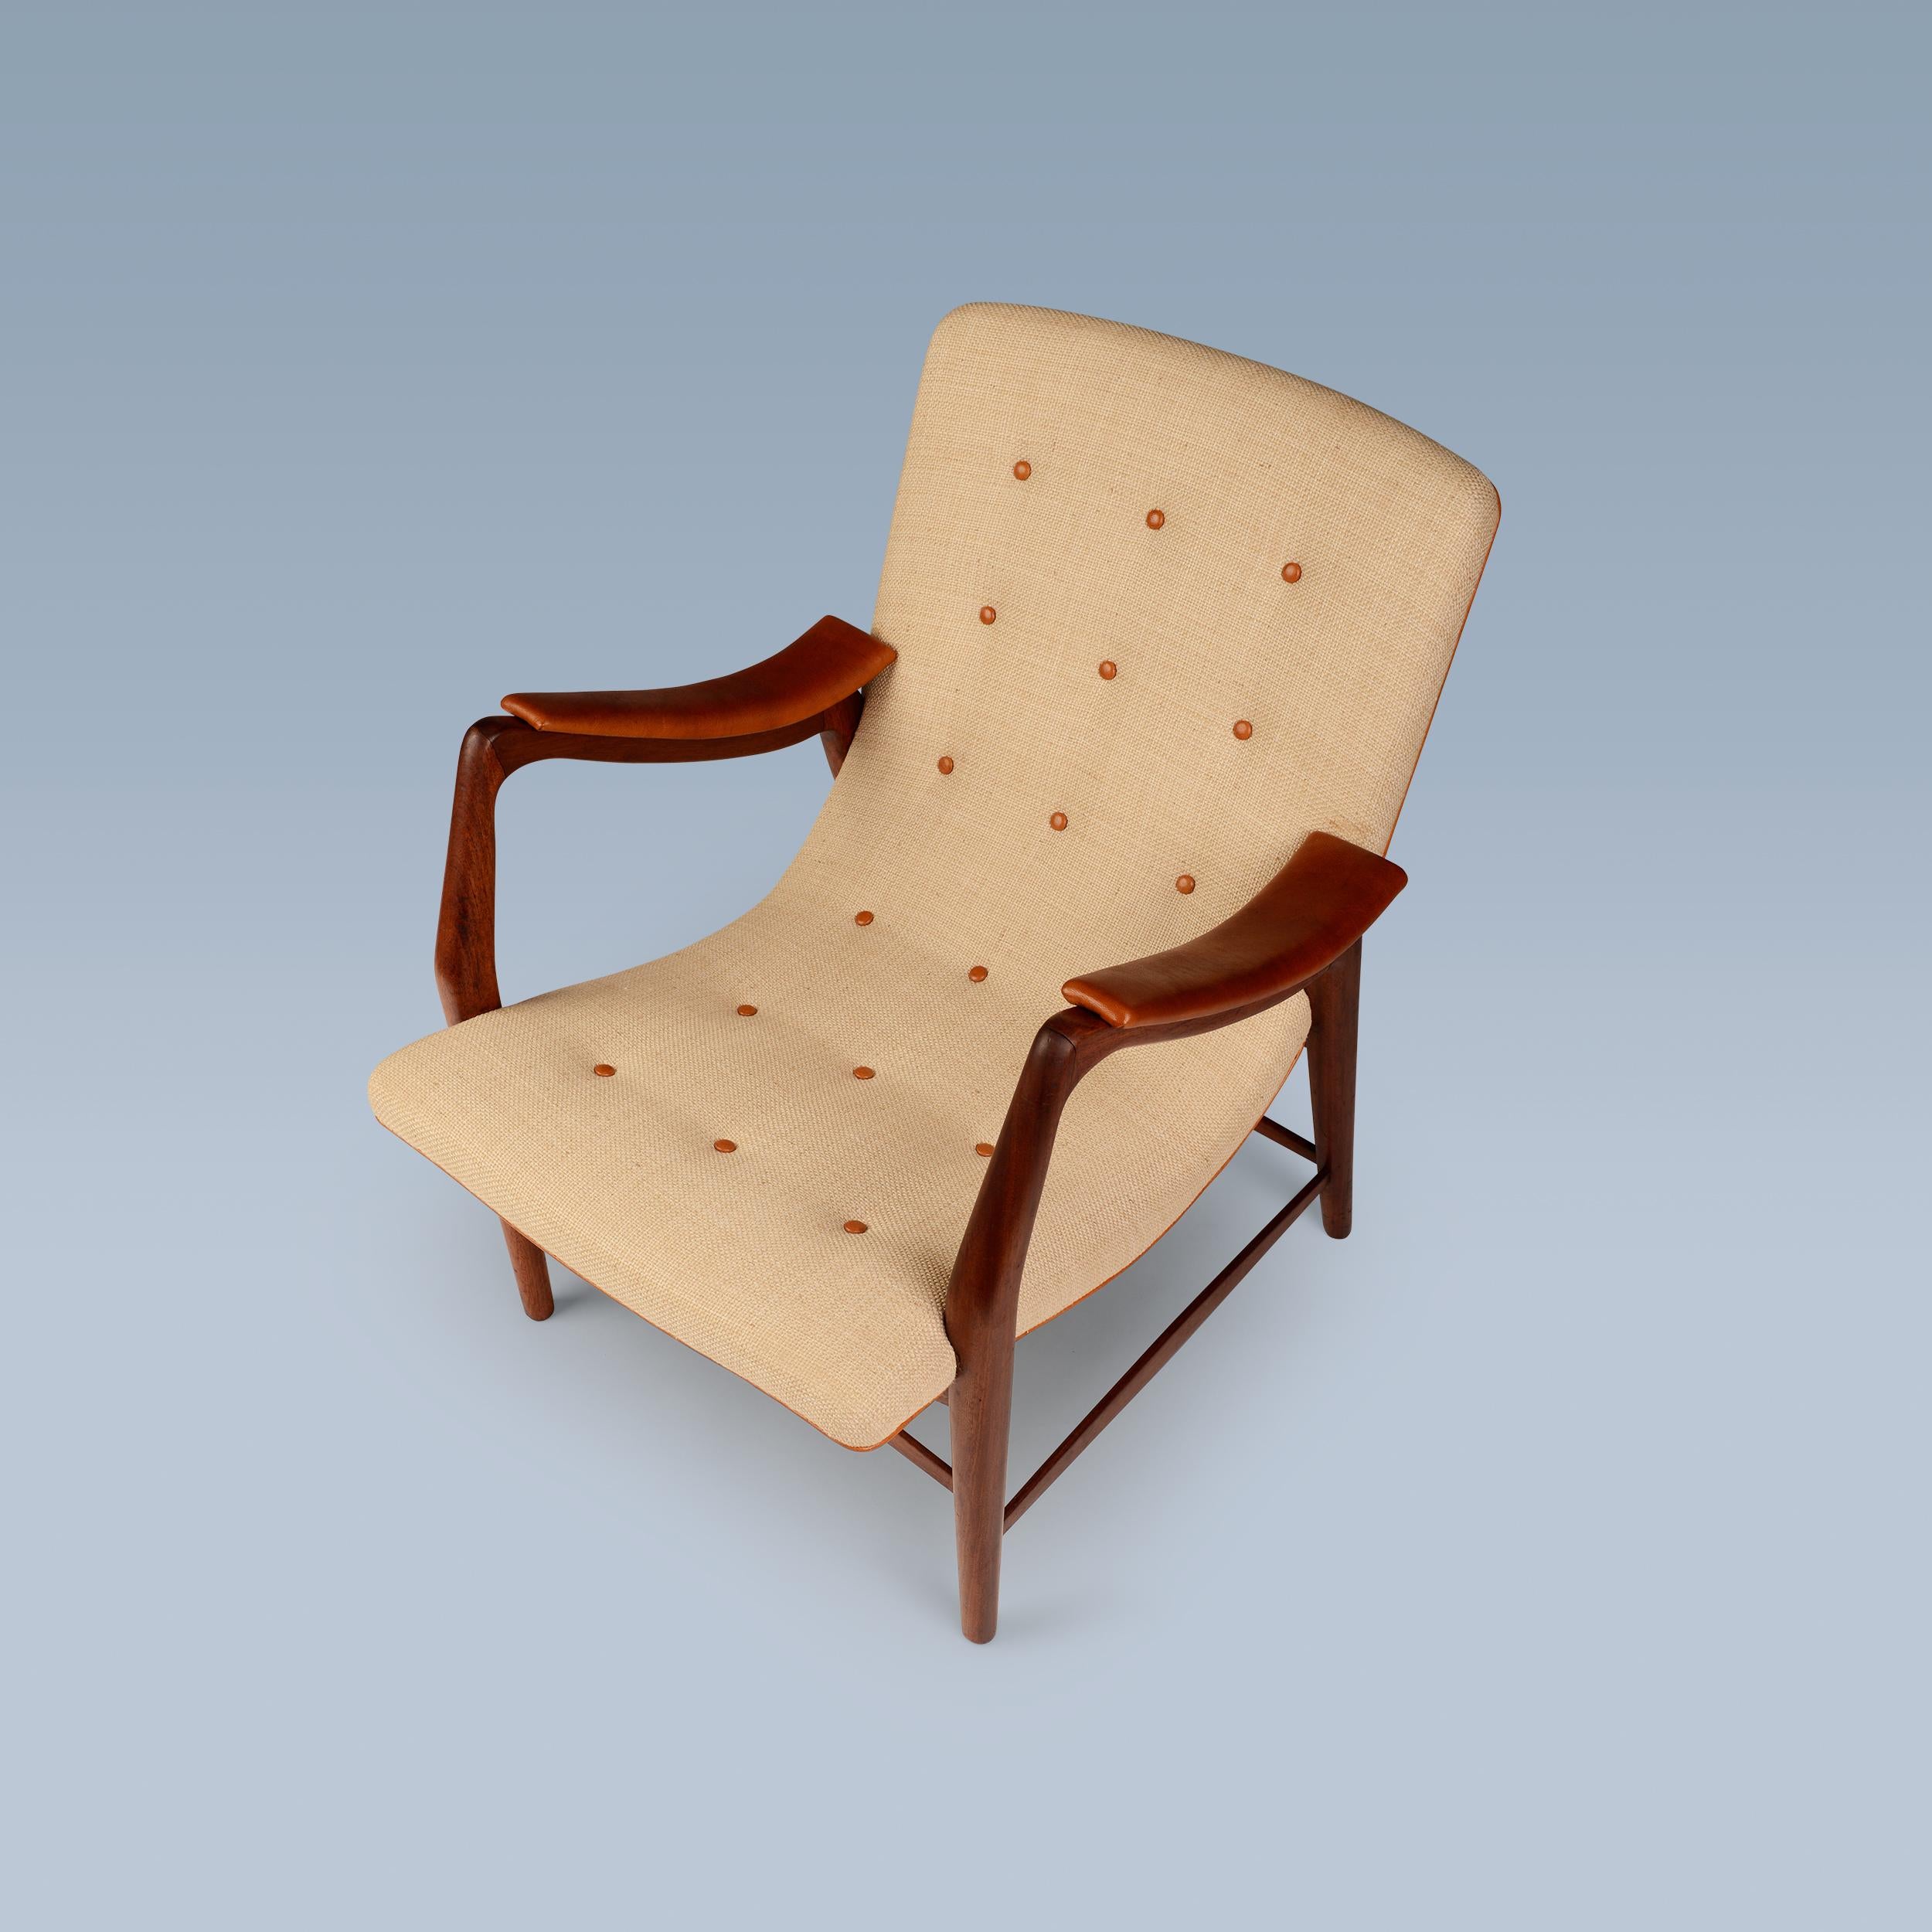 Ce rare fauteuil en teck a une assise incurvée et le dossier est tapissé d'un tissu clair. Les accoudoirs, les passepoils et les boutons du dossier sont en cuir nigérien.

La chaise a été conçue au début de l'année 1947 par Arne Hovmand/One